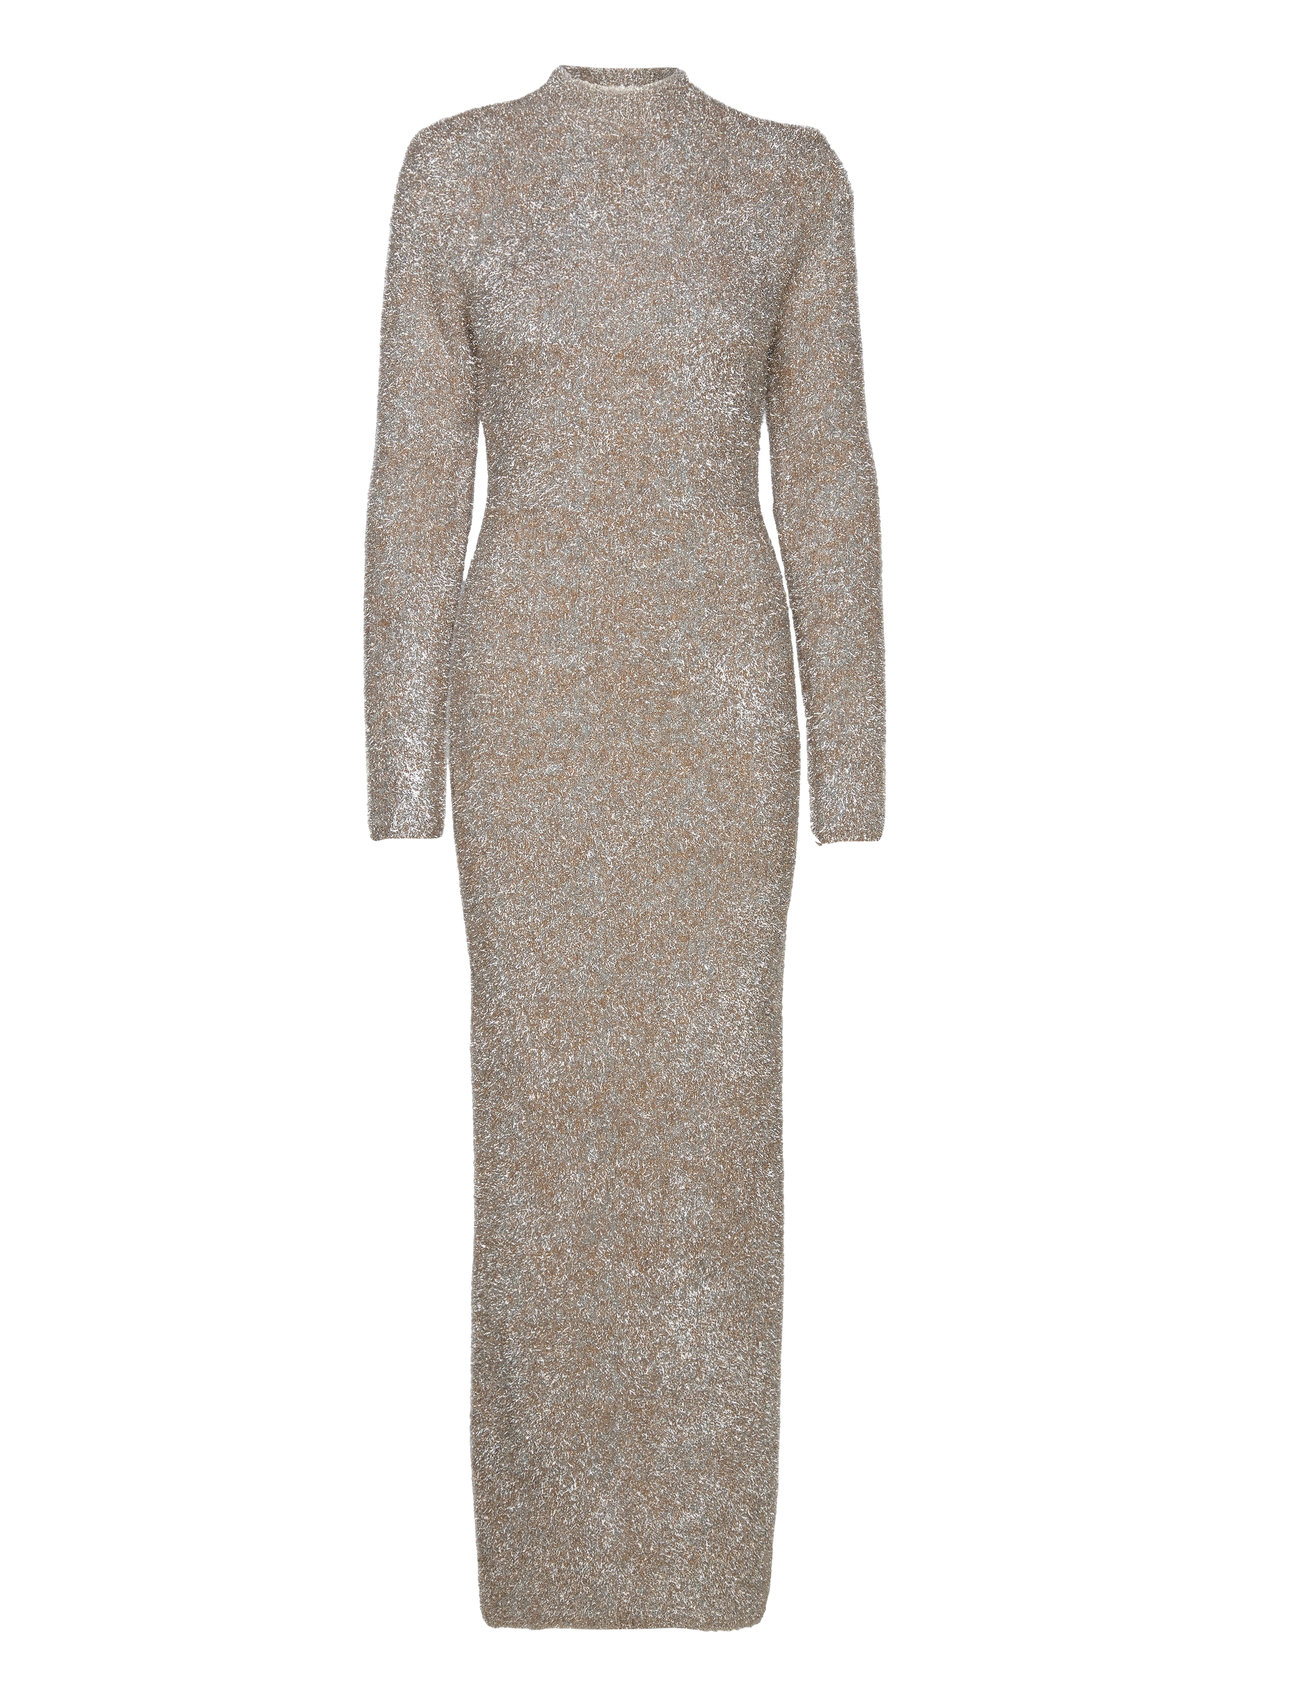 ROTATE Birger Christensen Glitter Knit Maxi Dress - Maxi dresses 